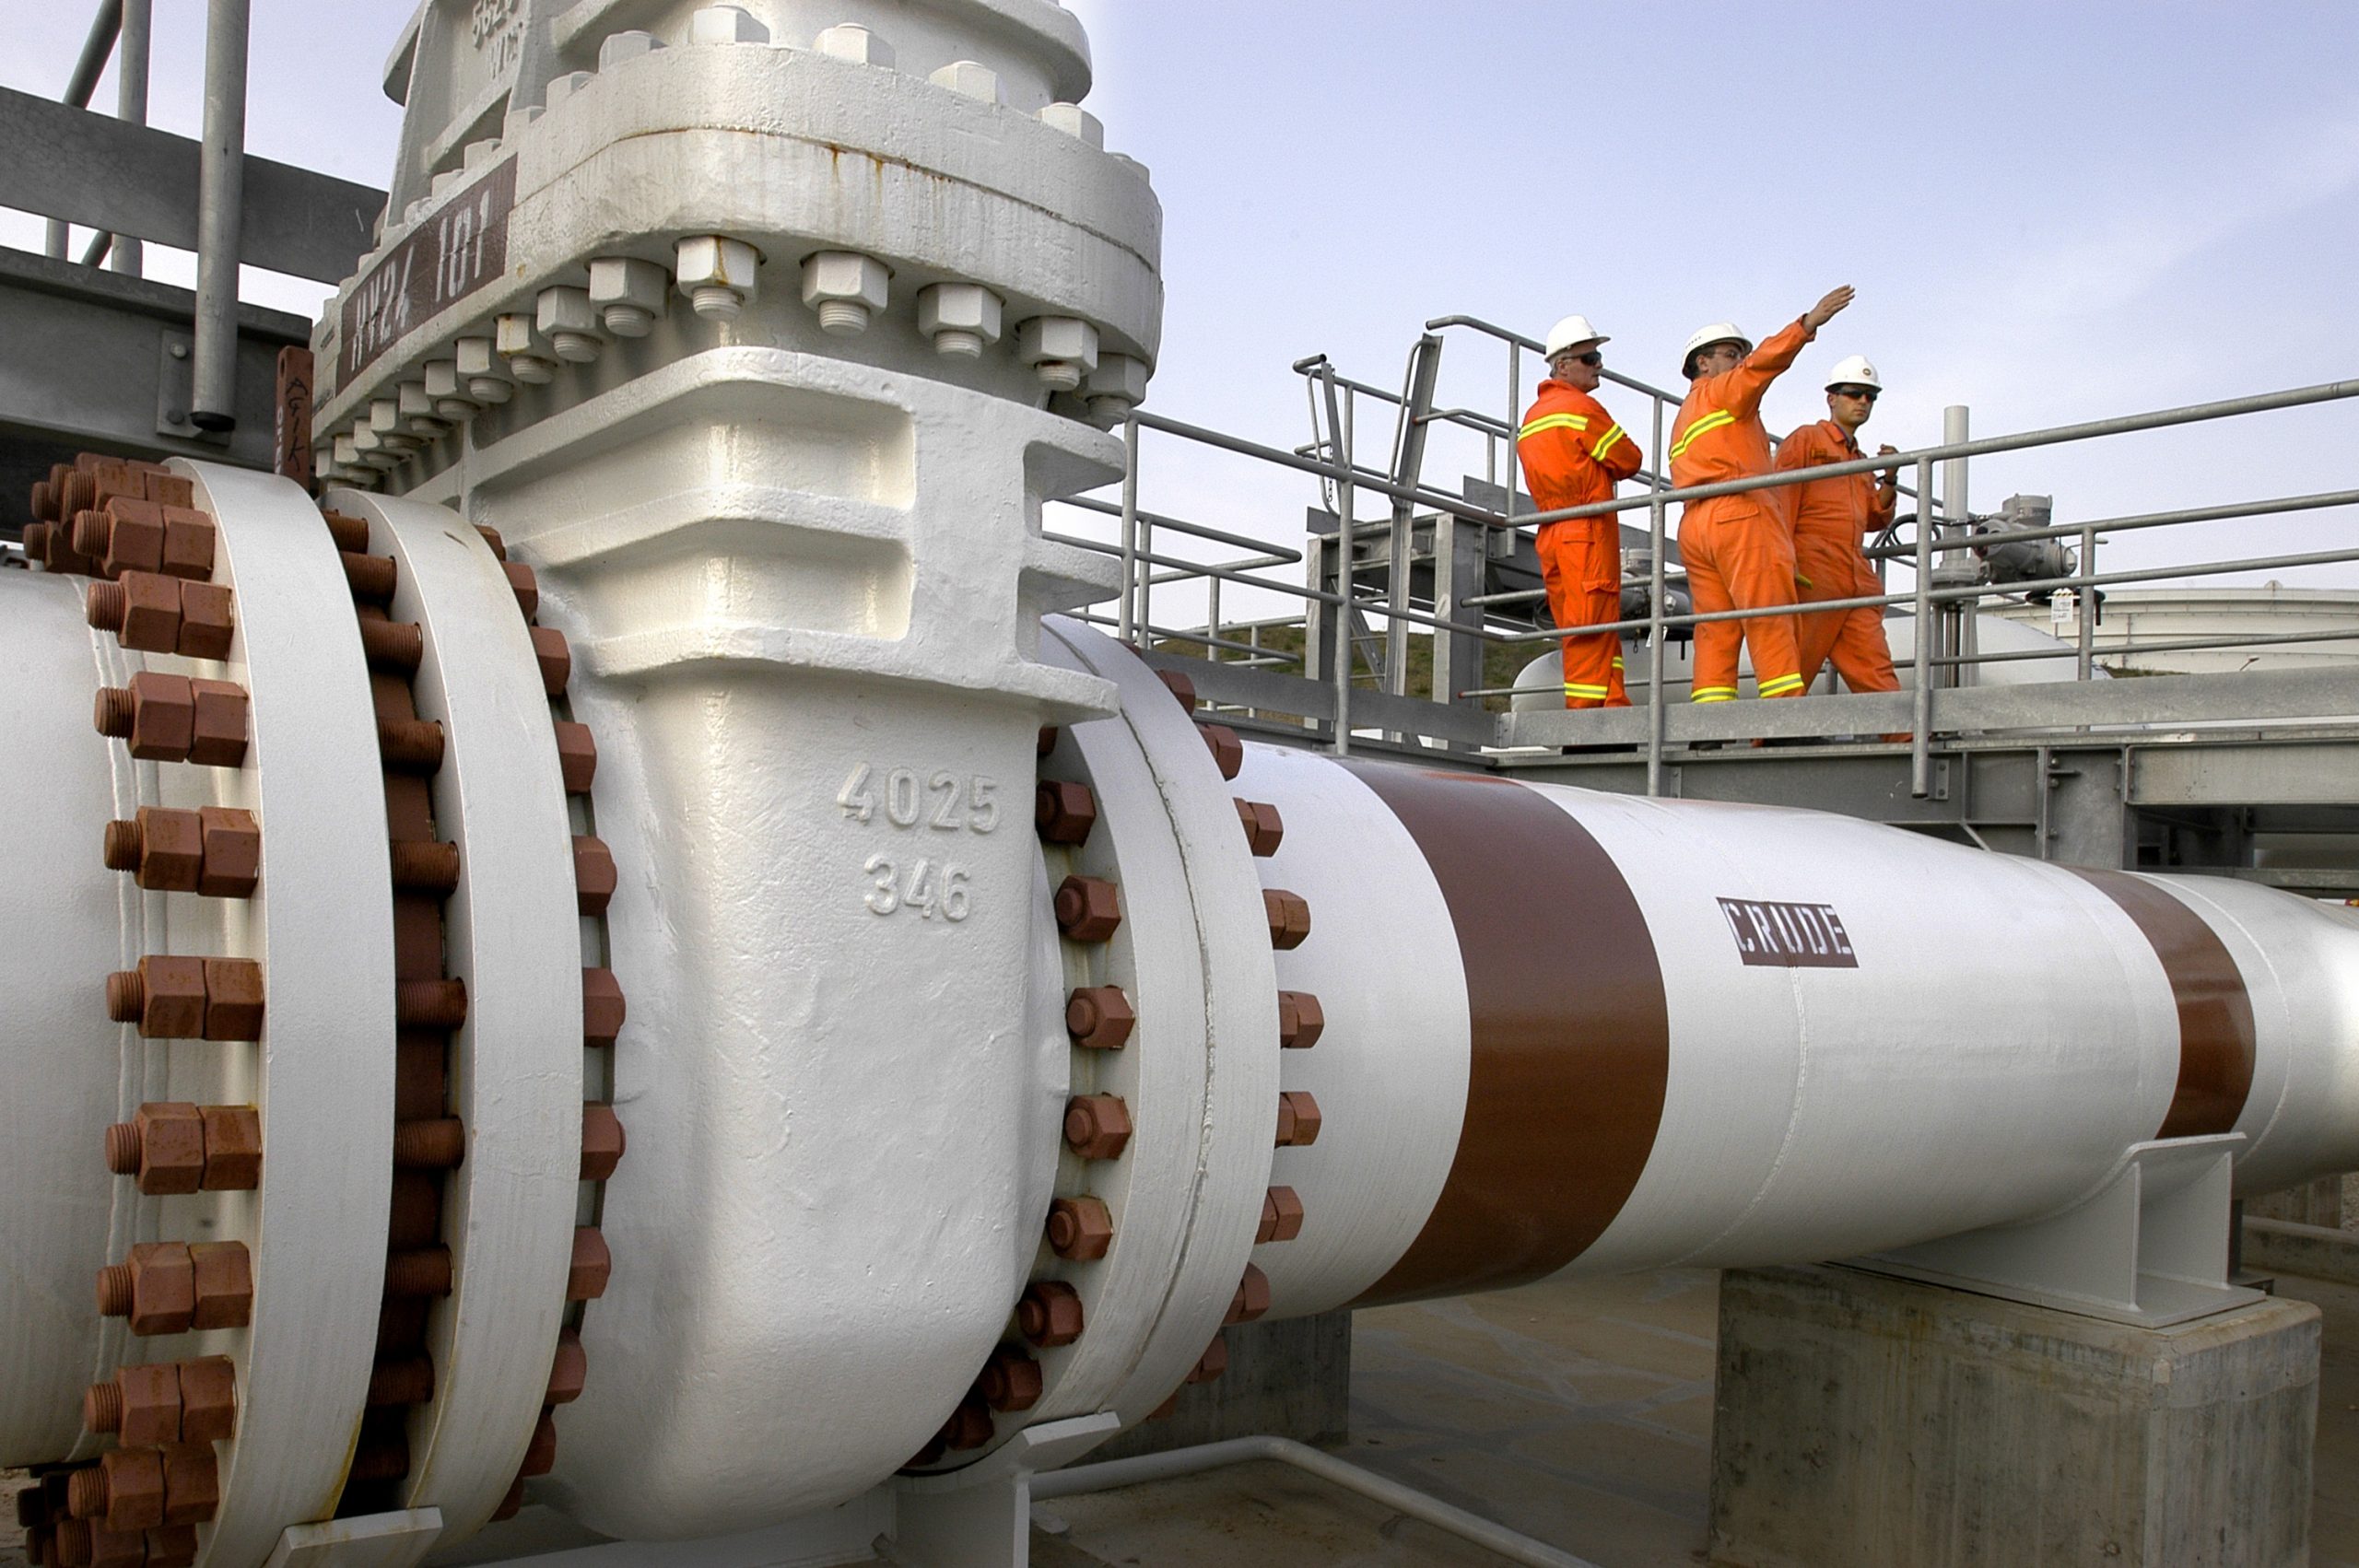 Rusya’nın doğal gaz ödemelerini ruble ile yapması talebi kabul edilemez